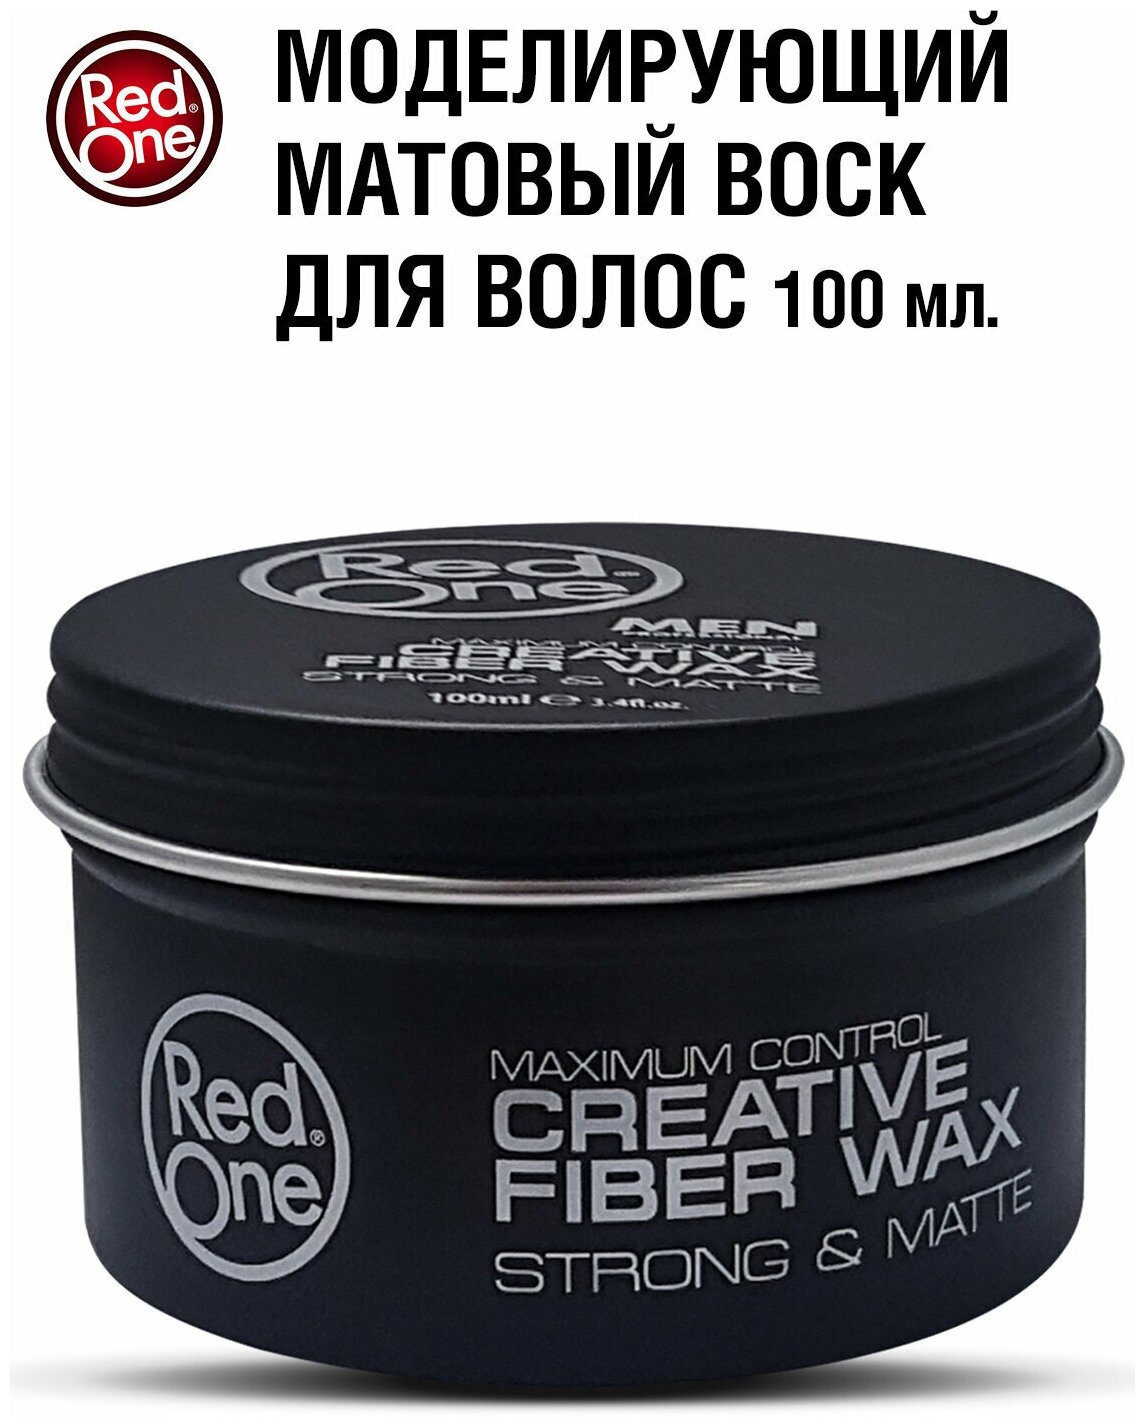 RedOne Моделирующий матовый воск для волос ультрасильной фиксации Creative Fiber Wax STRONG & MATTE 100 мл